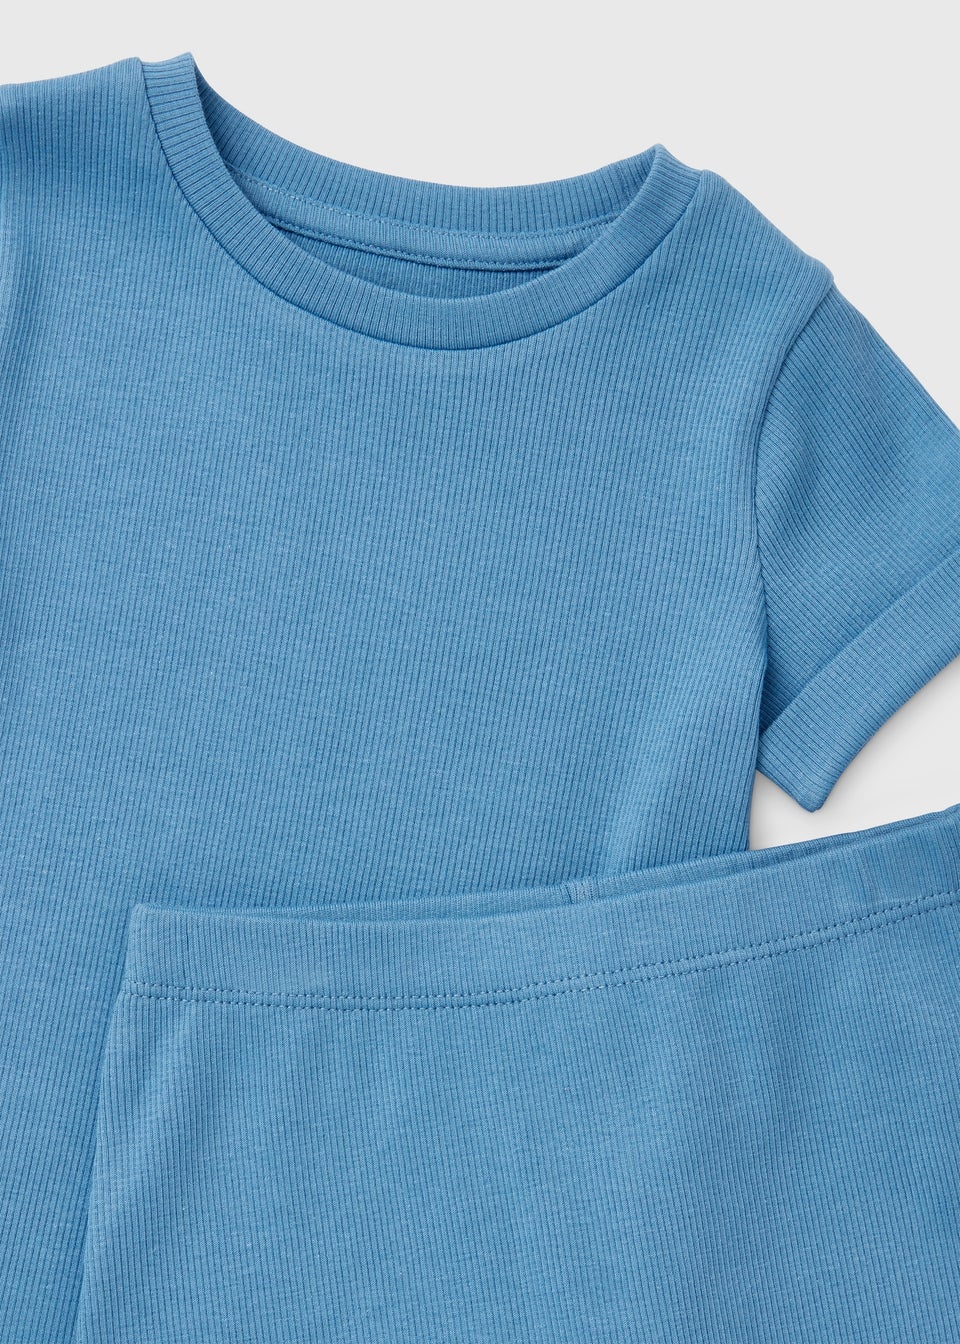 Baby Blue T-Shirt & Shorts Set (Newborn-23mths)